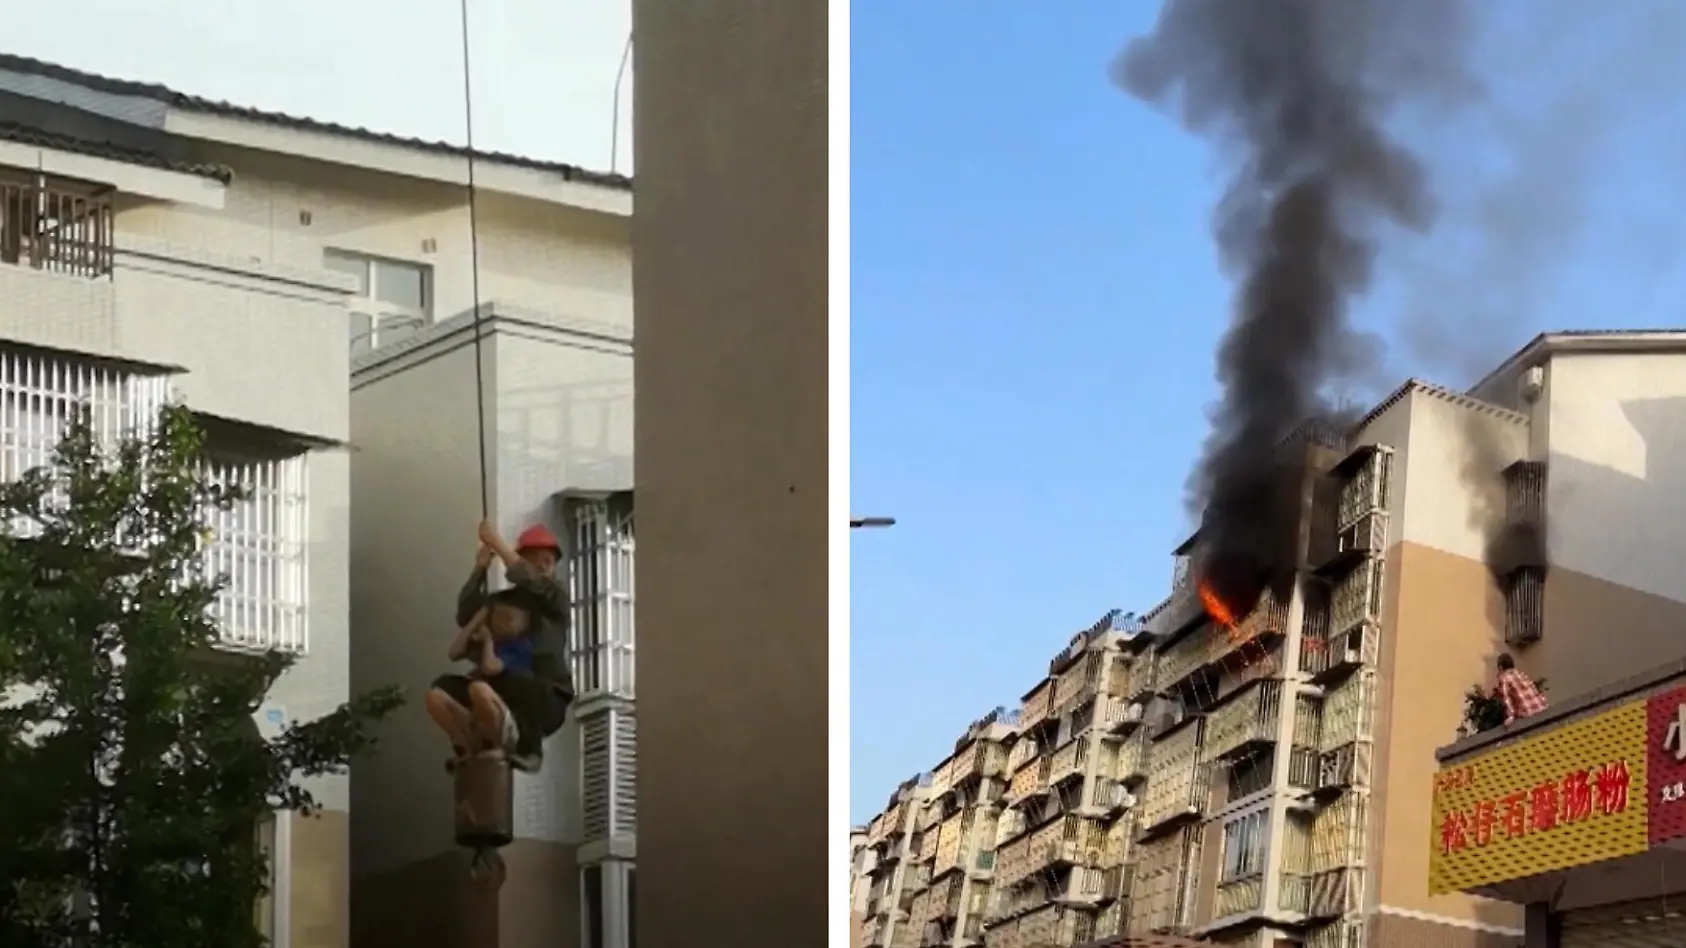 Mutiger Arbeiter rettet Kind aus Feuer